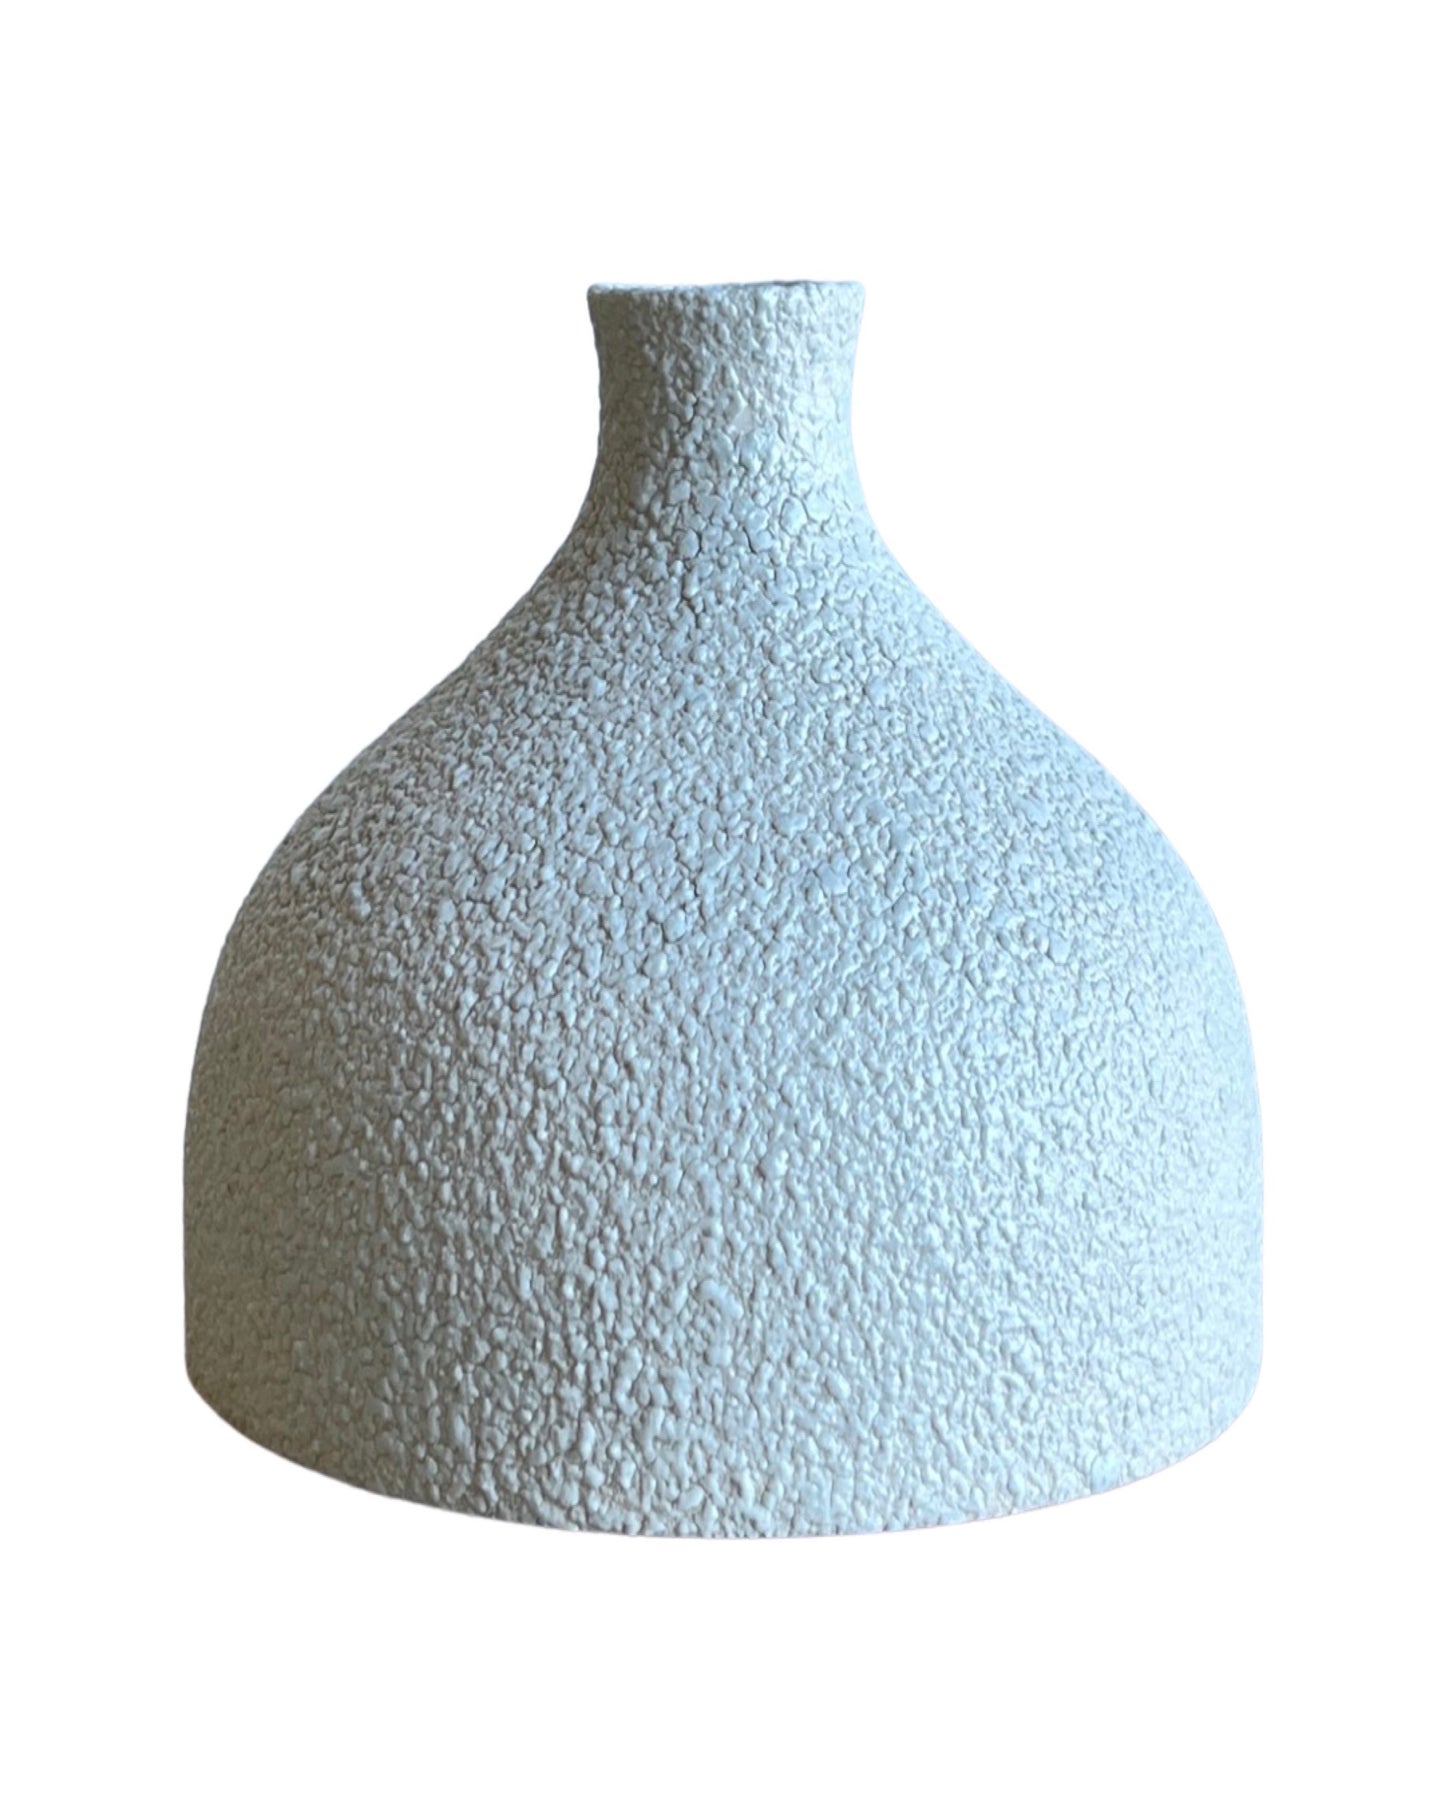 Sgrafo Modern Germany White Vase, 1960s